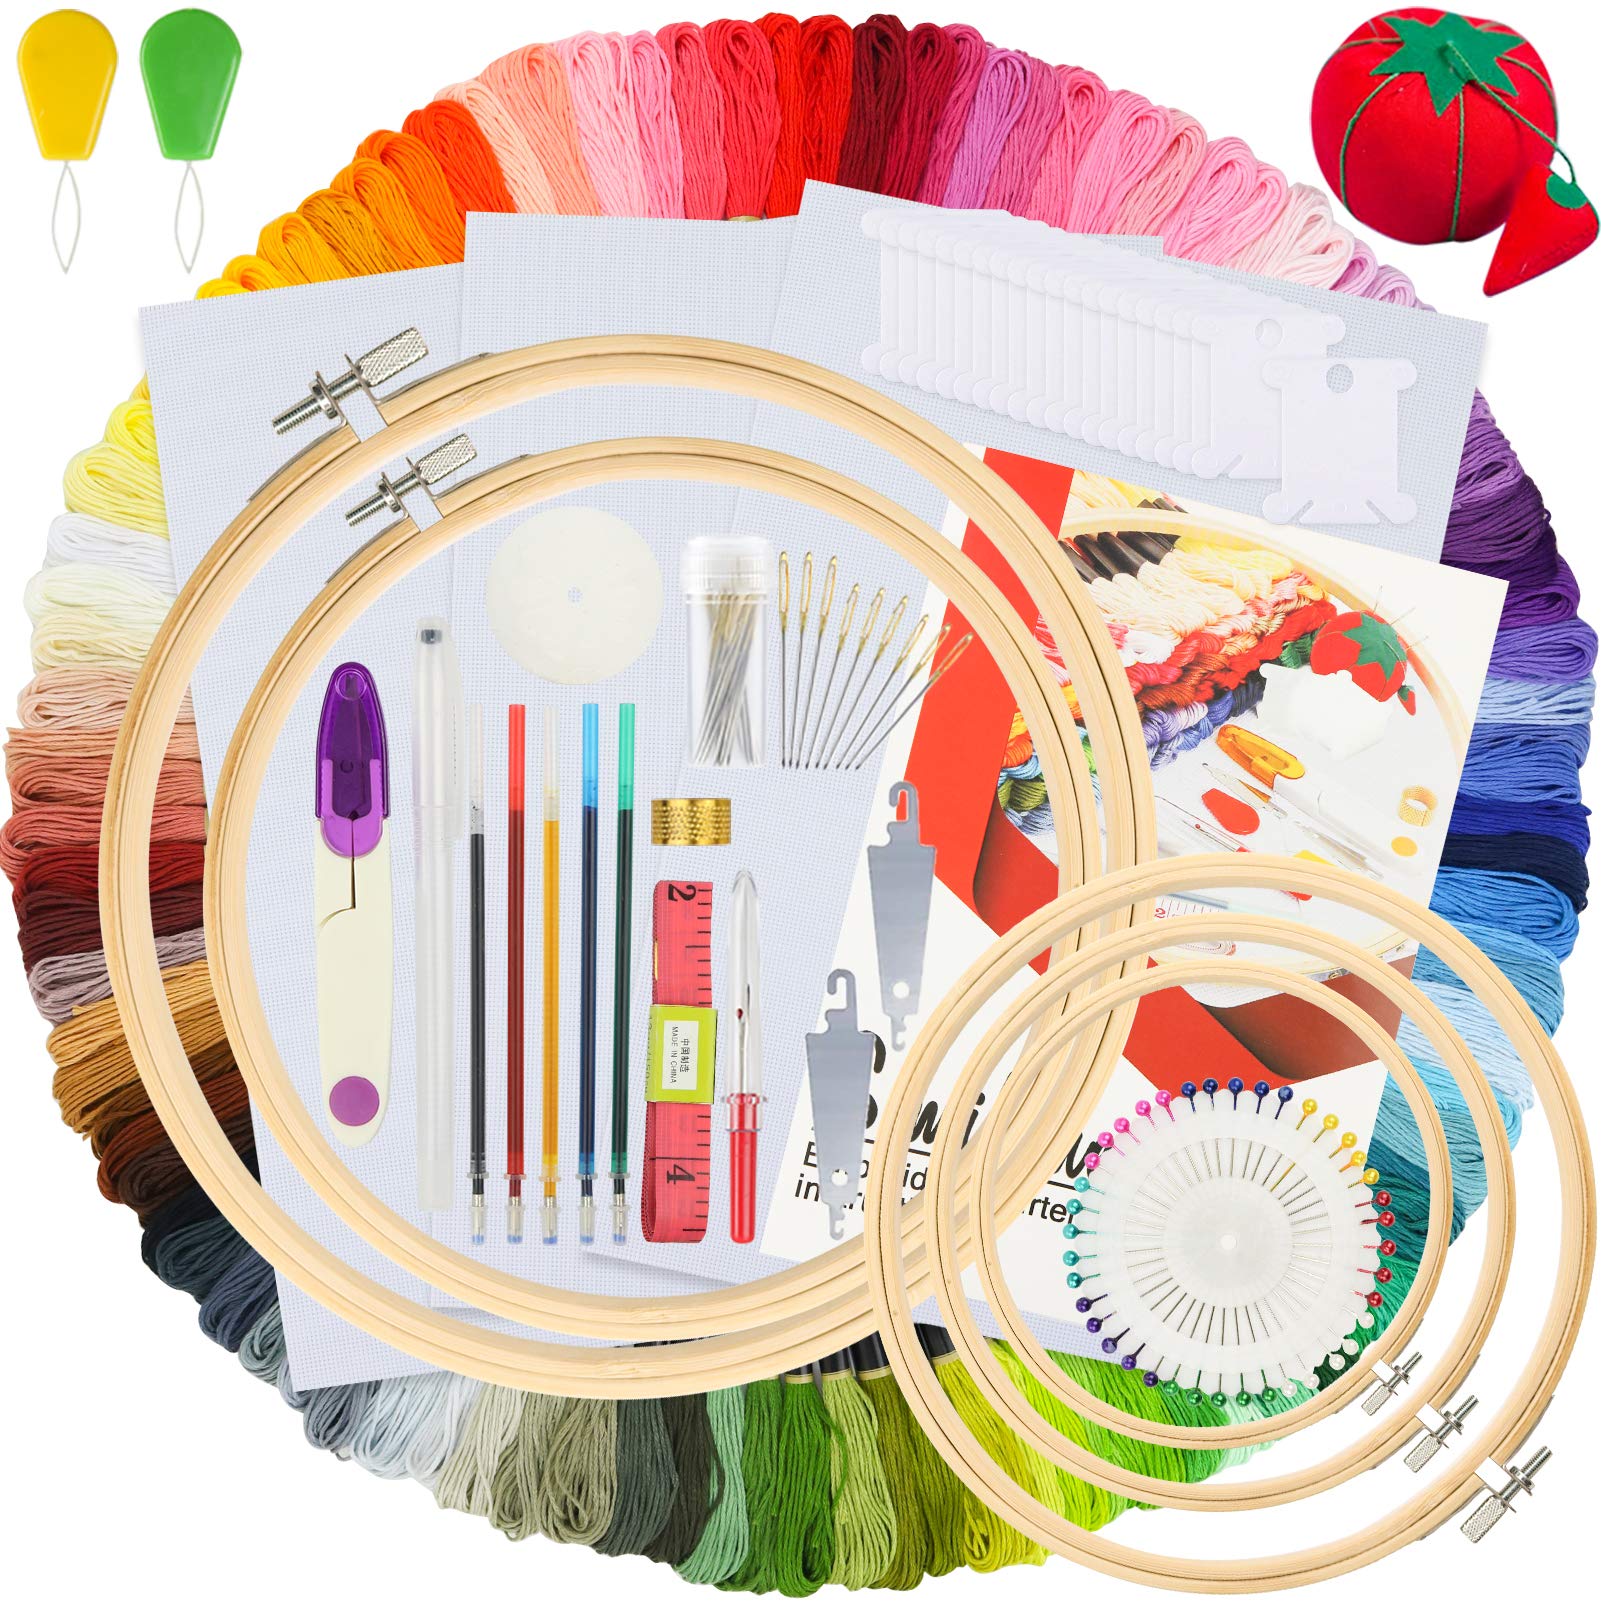 Similane Embroidery Kit 215 Pcs 100 Colors Threads 5 Pcs